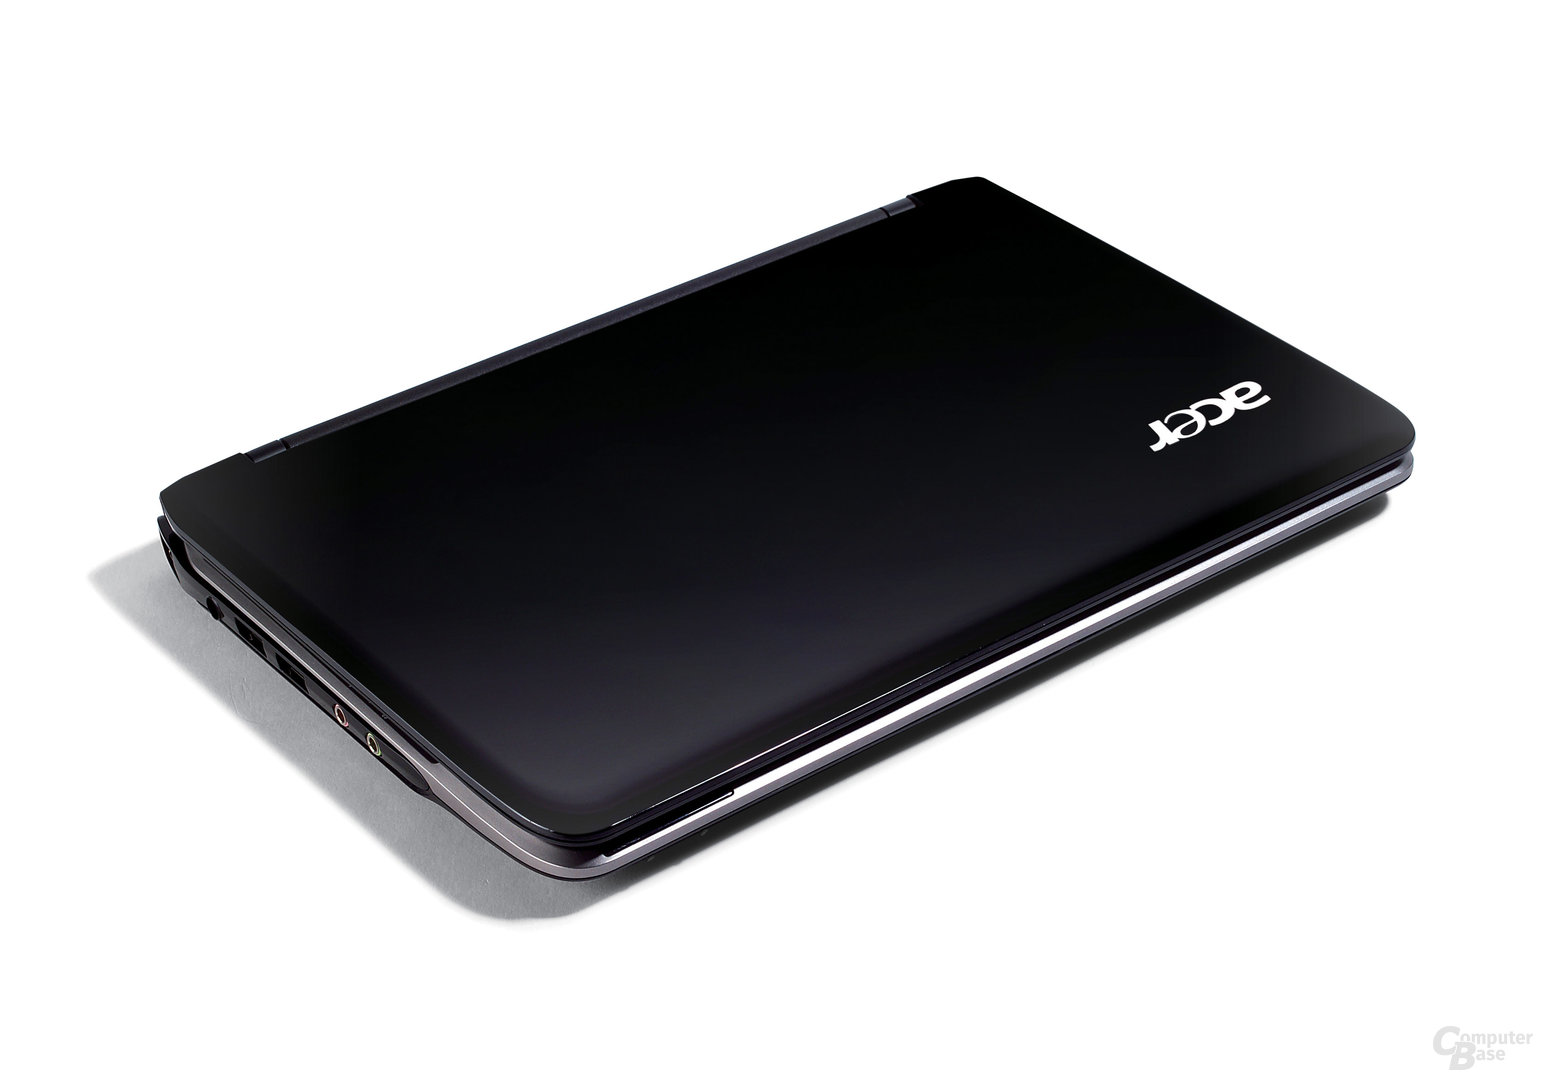 Acer Aspire one 751 in schwarz